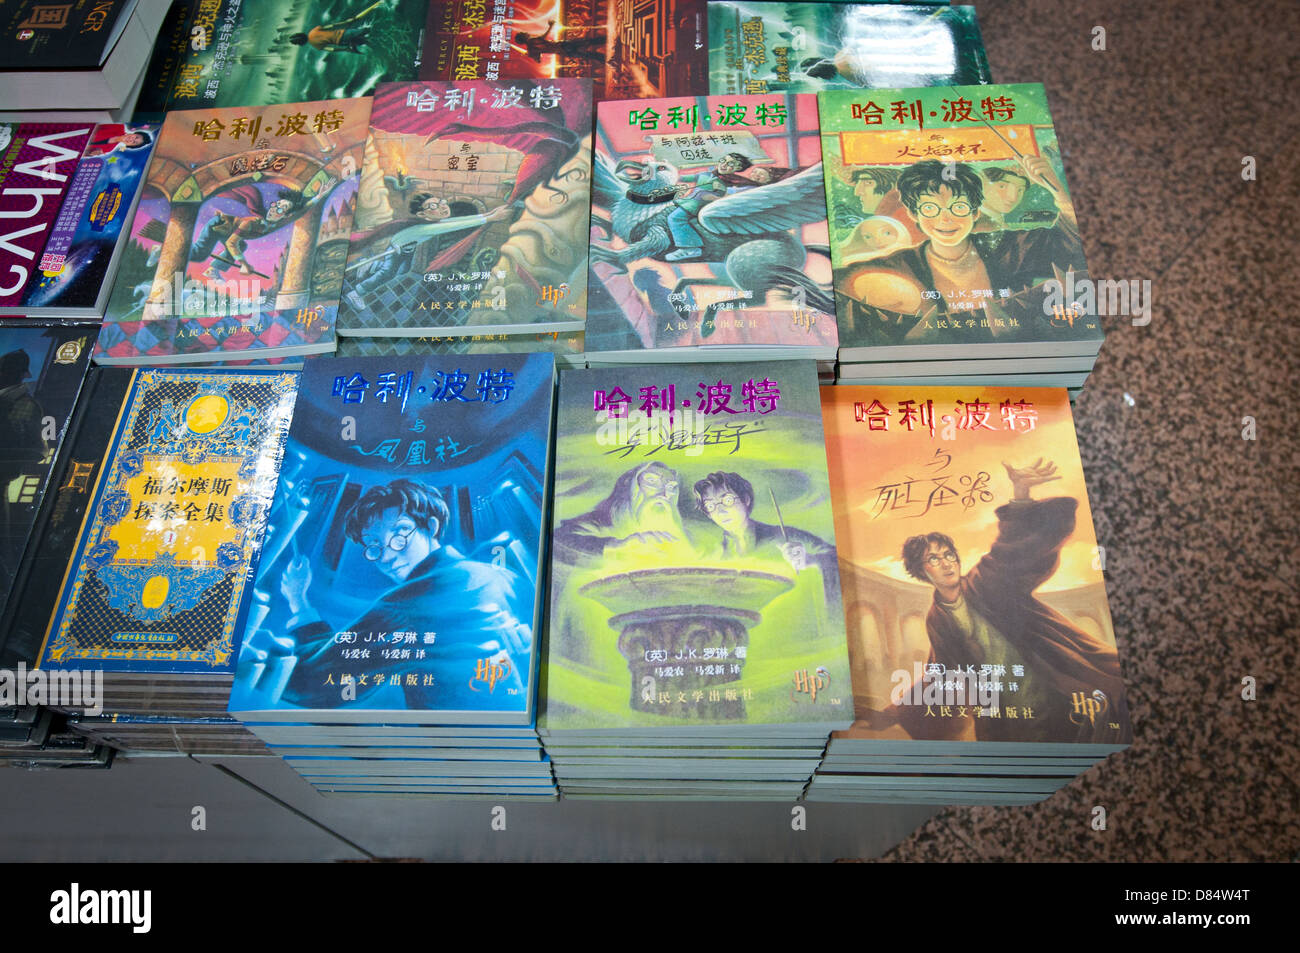 Harry Potter books in huge multi-storey Wangfujing Xinhua Bookstore at Wangfujing Street in Dongcheng District, Beijing, China Stock Photo